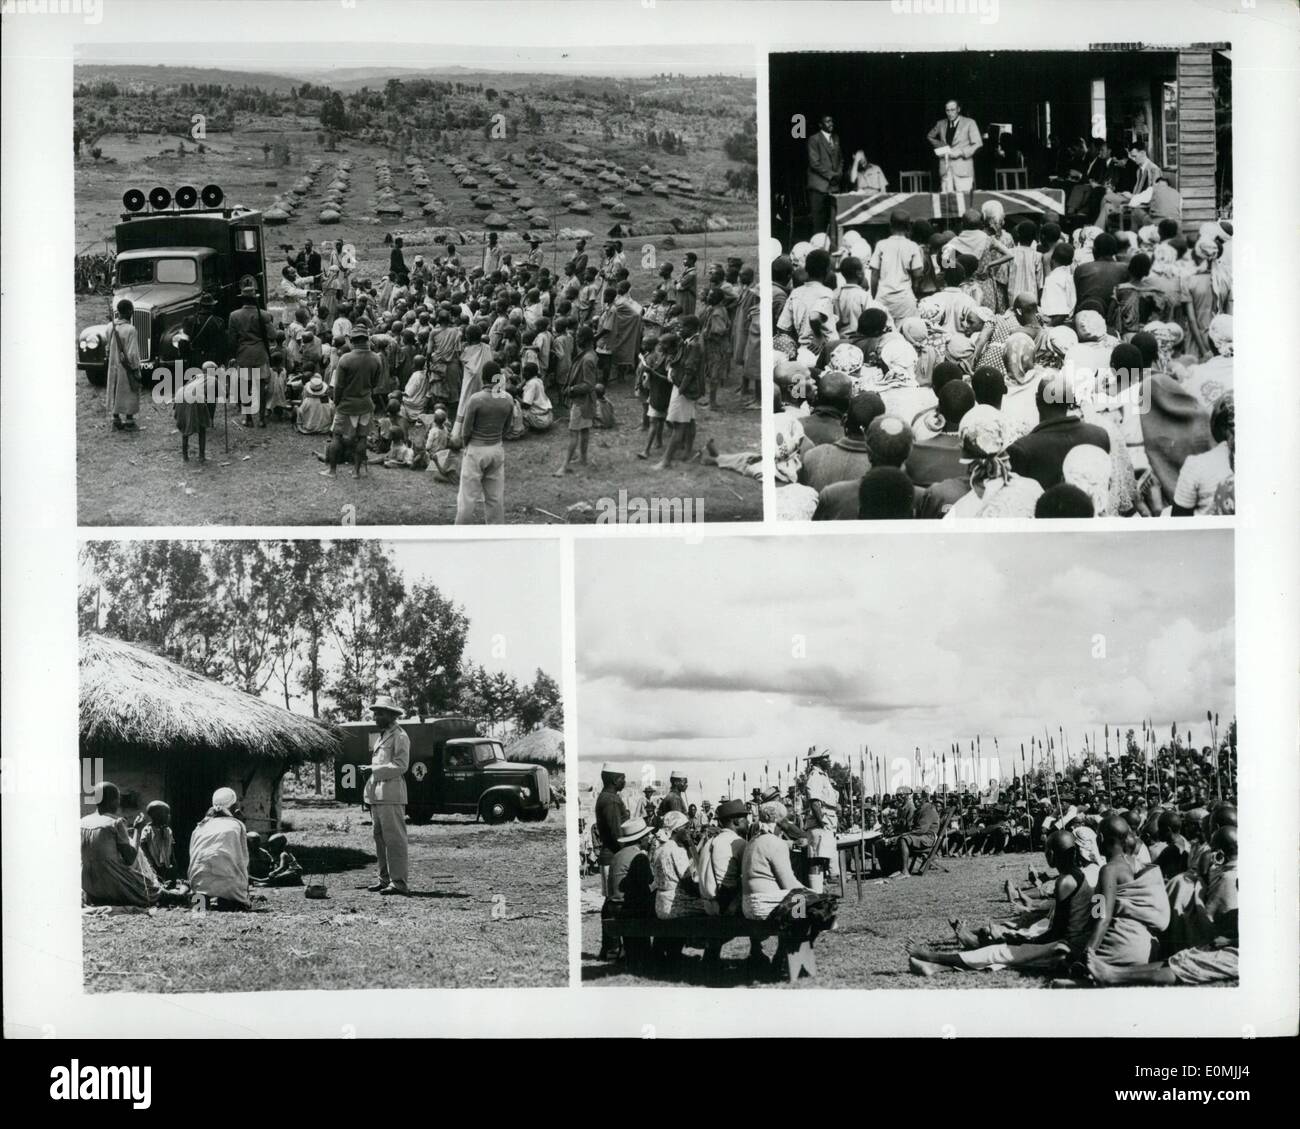 Juin 06, 1955 - Méthodes contre Mau Mau : la campagne militaire contre les Mau Mau est dans sa dernière phase au Kenya, Afrique. La véritable tâche qui nous attend est de réhabiliter et de gagner le gros de la tribu Kikuyu, qui pendant des années ont été soumis à une propagande Mau Mau et souvent violente de la persuasion. Photo montre en haut à gauche : une foule recueillie à écouter comme un Kenya information gouvernementale van s'arrête à côté de place du marché de la réserve Kikuyu.par un haut-parleur Kikuyu fidèles de dire le mal fait par Mau Mau et ensuite distribuer les journaux et brochures Banque D'Images